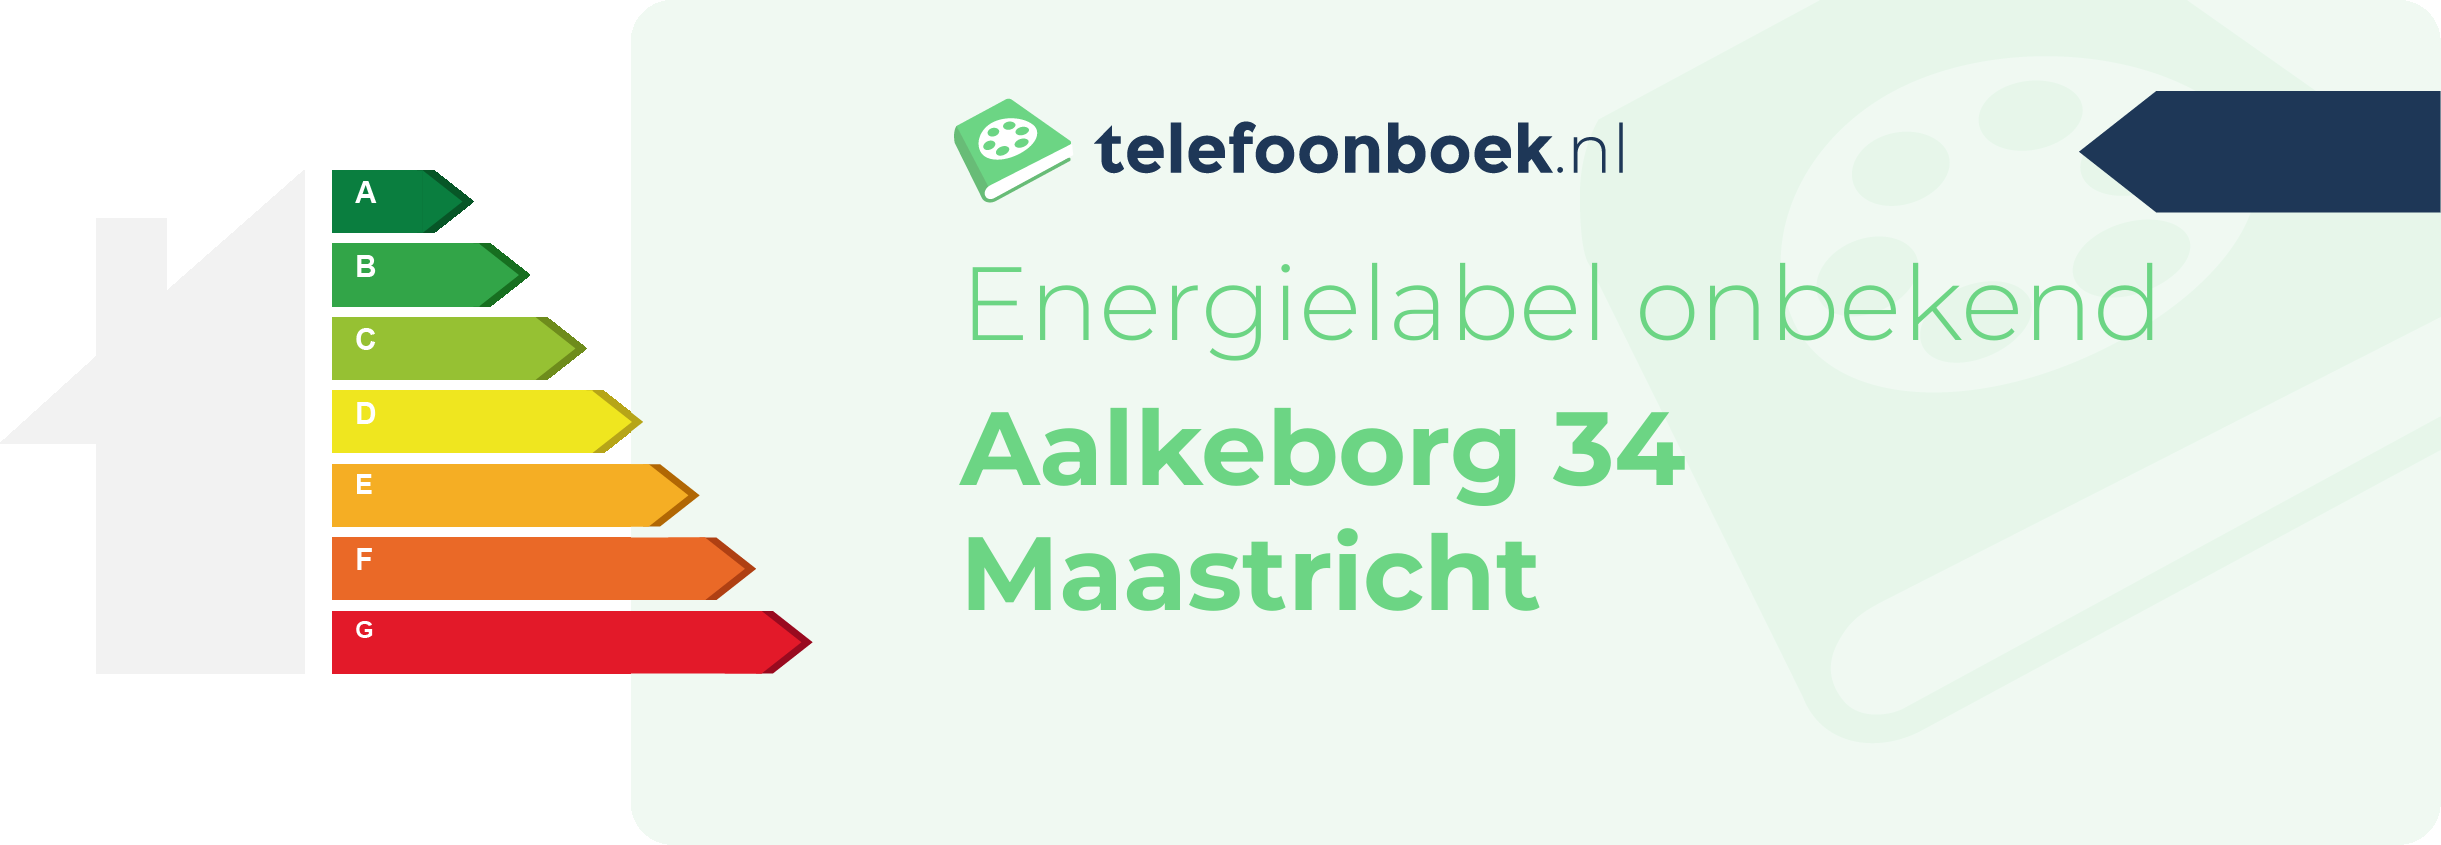 Energielabel Aalkeborg 34 Maastricht